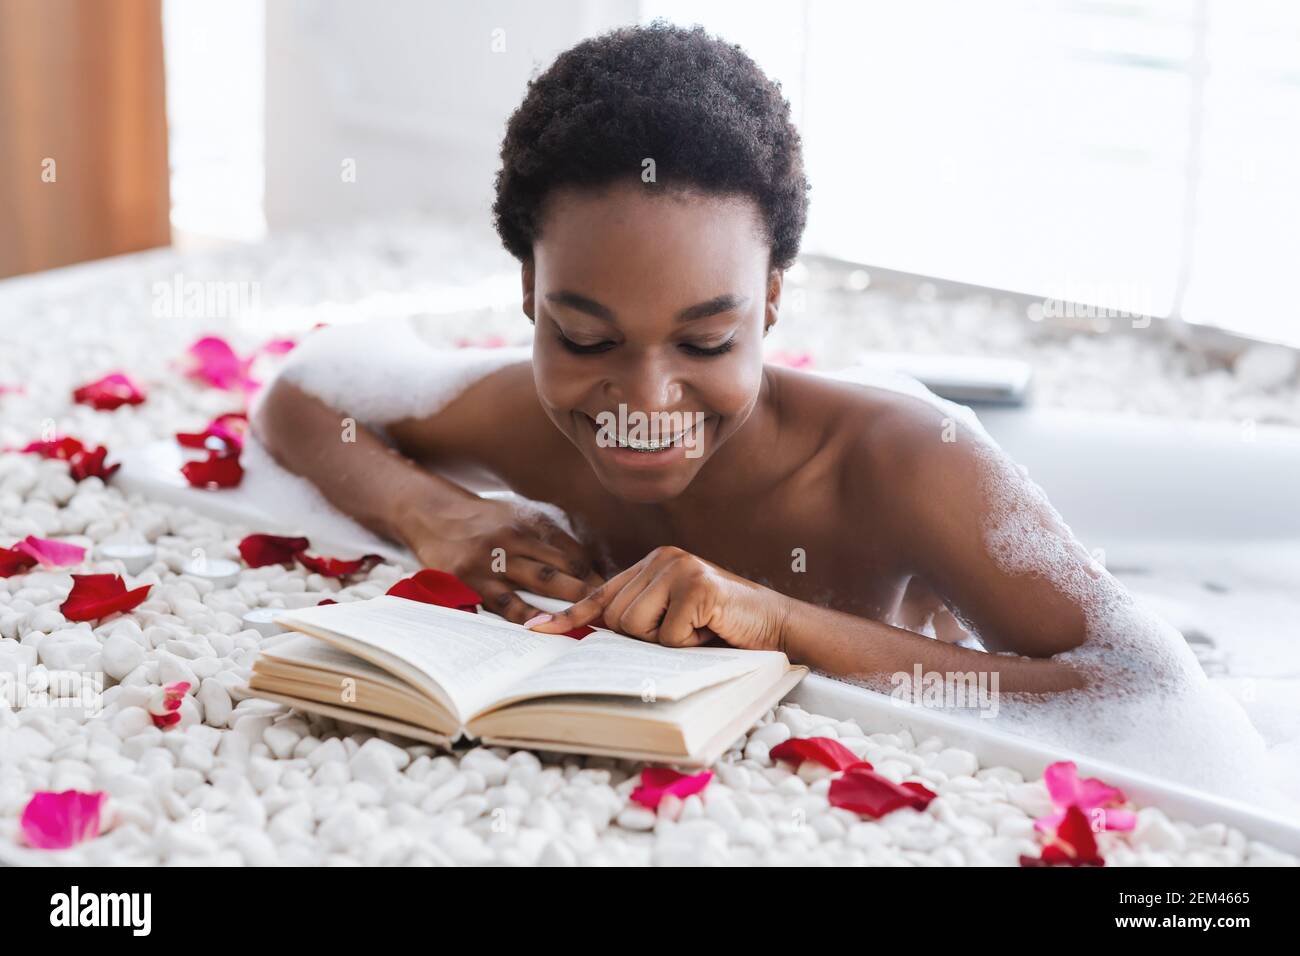 Hautpflege, heiße Badewanne und Ruhe, Vitalbehandlung während der Selbstisolation Stockfoto